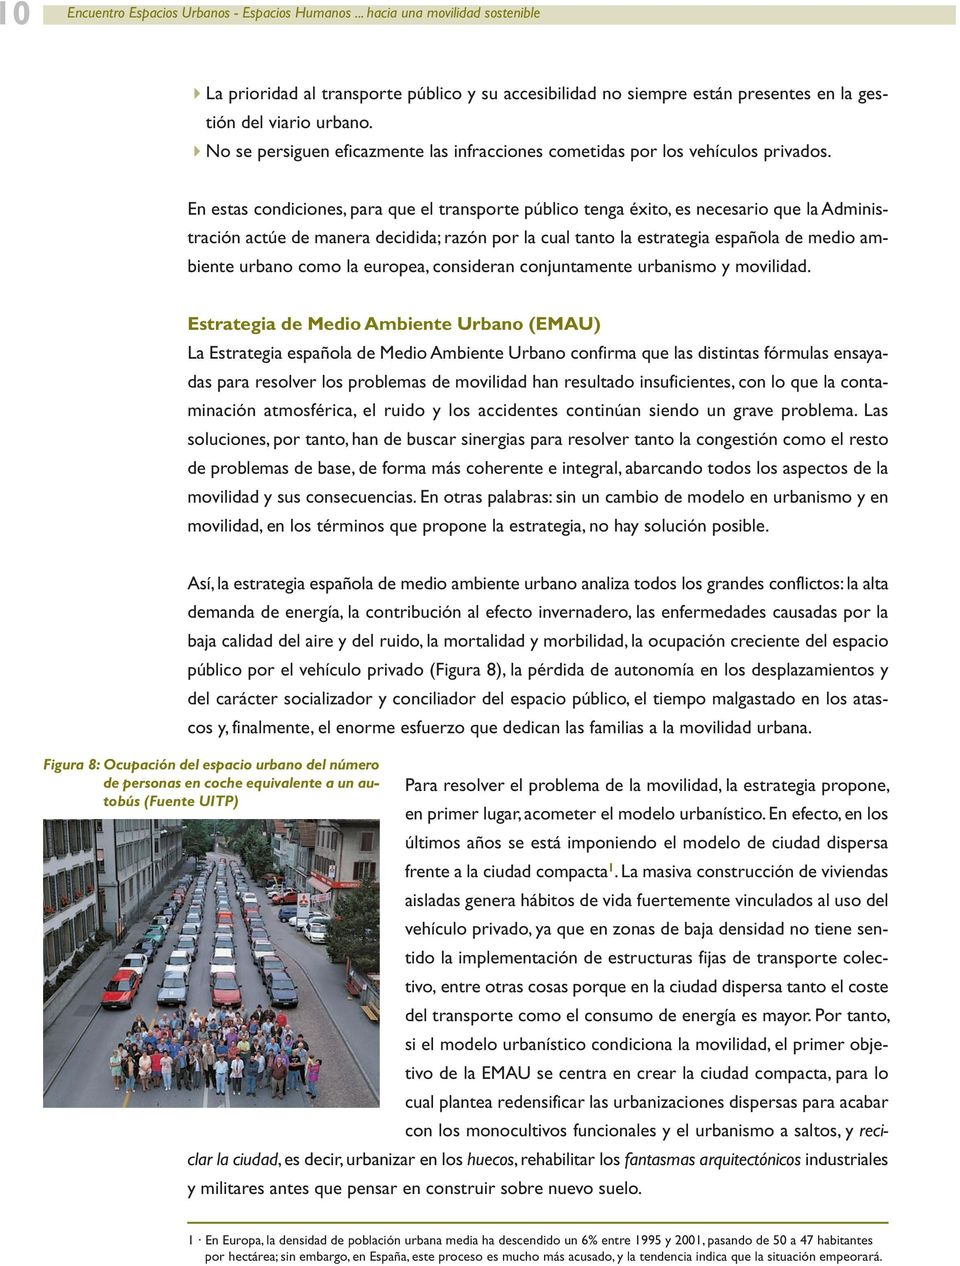 En estas condiciones, para que el transporte público tenga éxito, es necesario que la Administración actúe de manera decidida; razón por la cual tanto la estrategia española de medio ambiente urbano